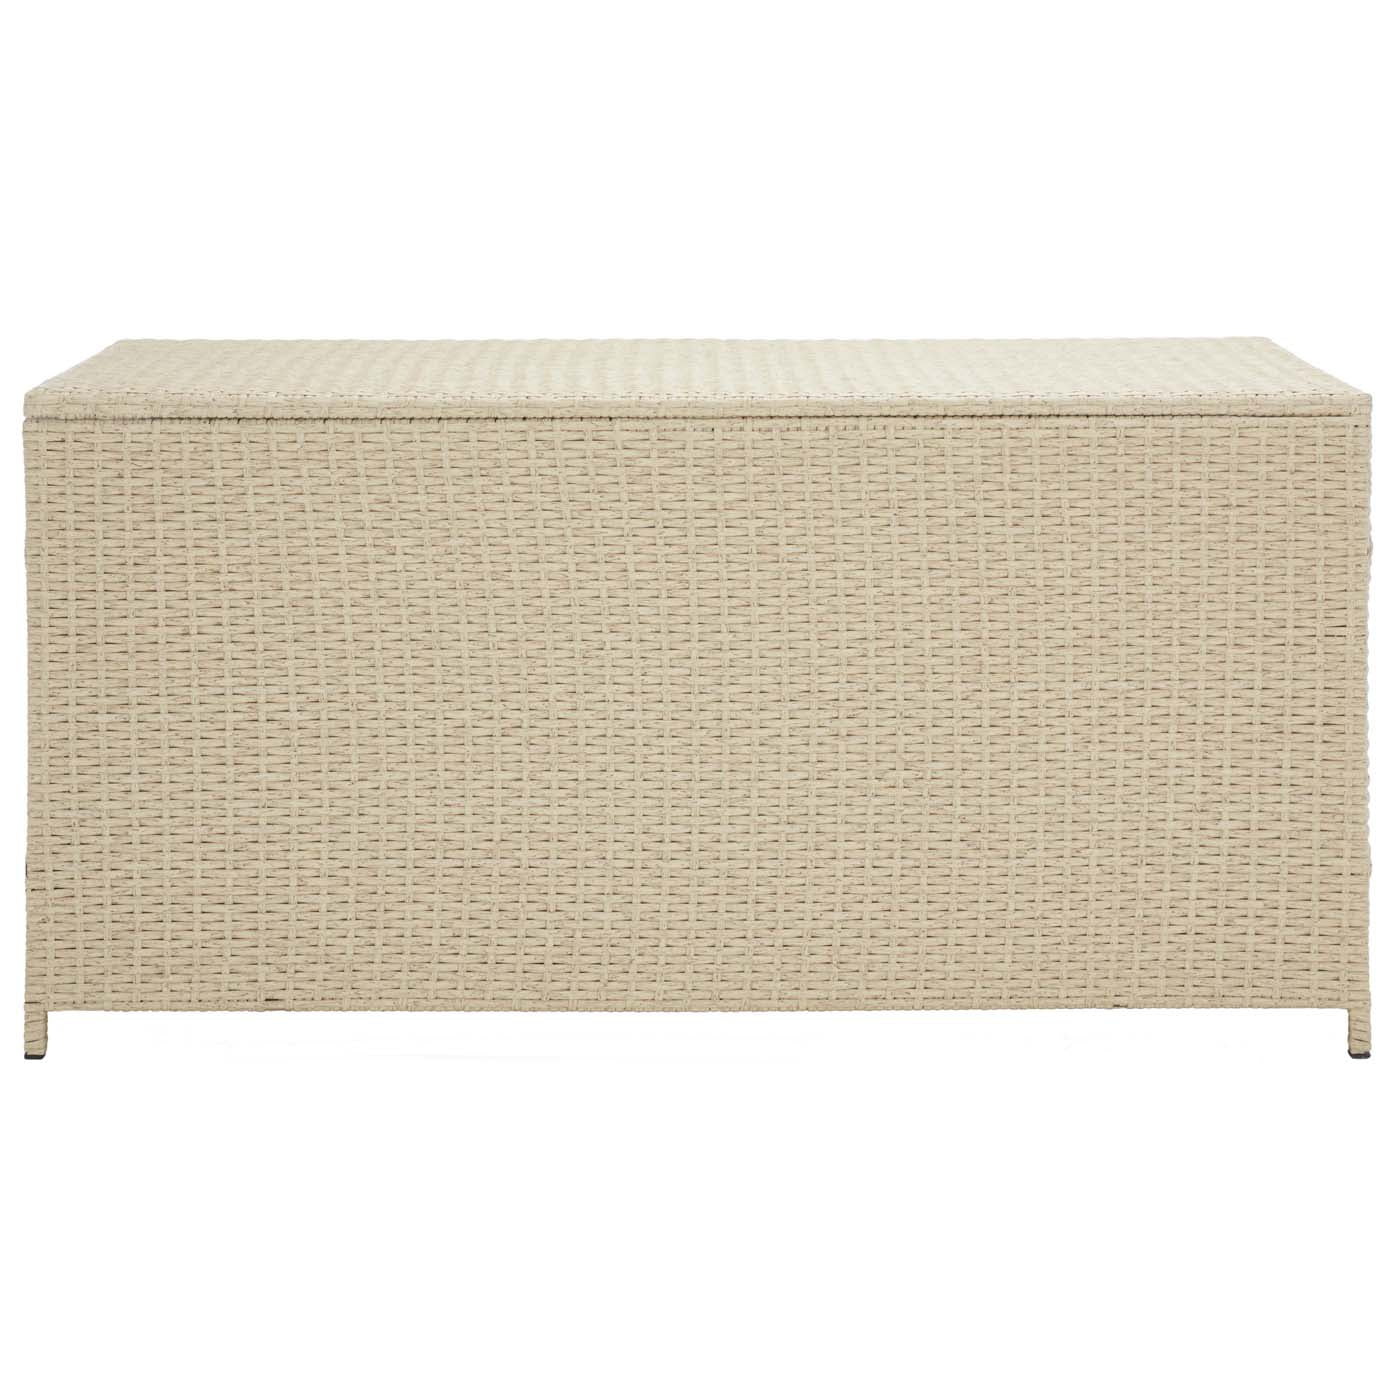 Safavieh Oliveira Cushion Box , PAT7709 - Beige/White Cushion